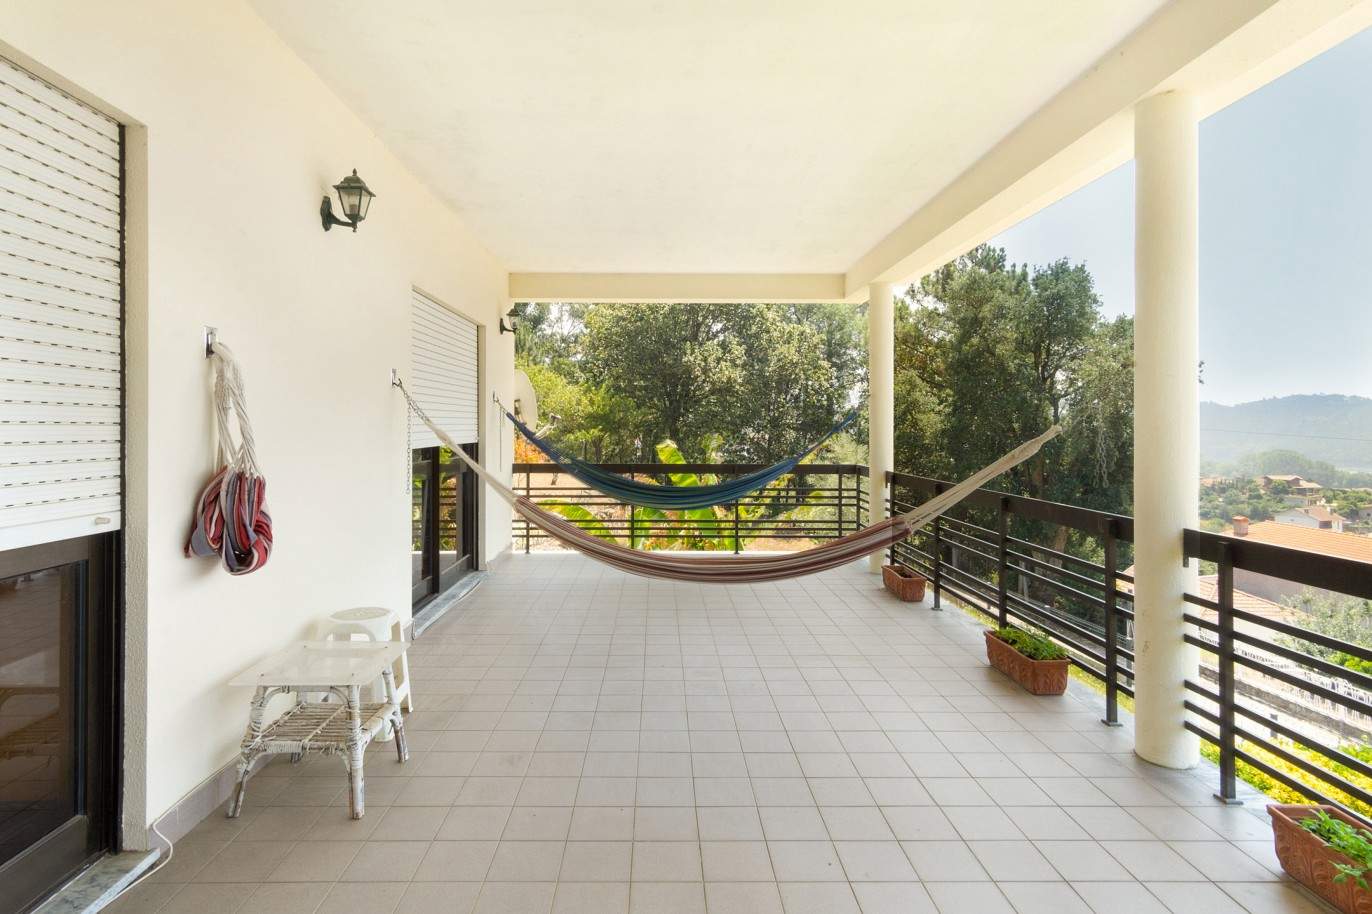 Villa mit Garten und Flussblick, zu verkaufen, in Melres, Gondomar, Porto, Portugal_204428